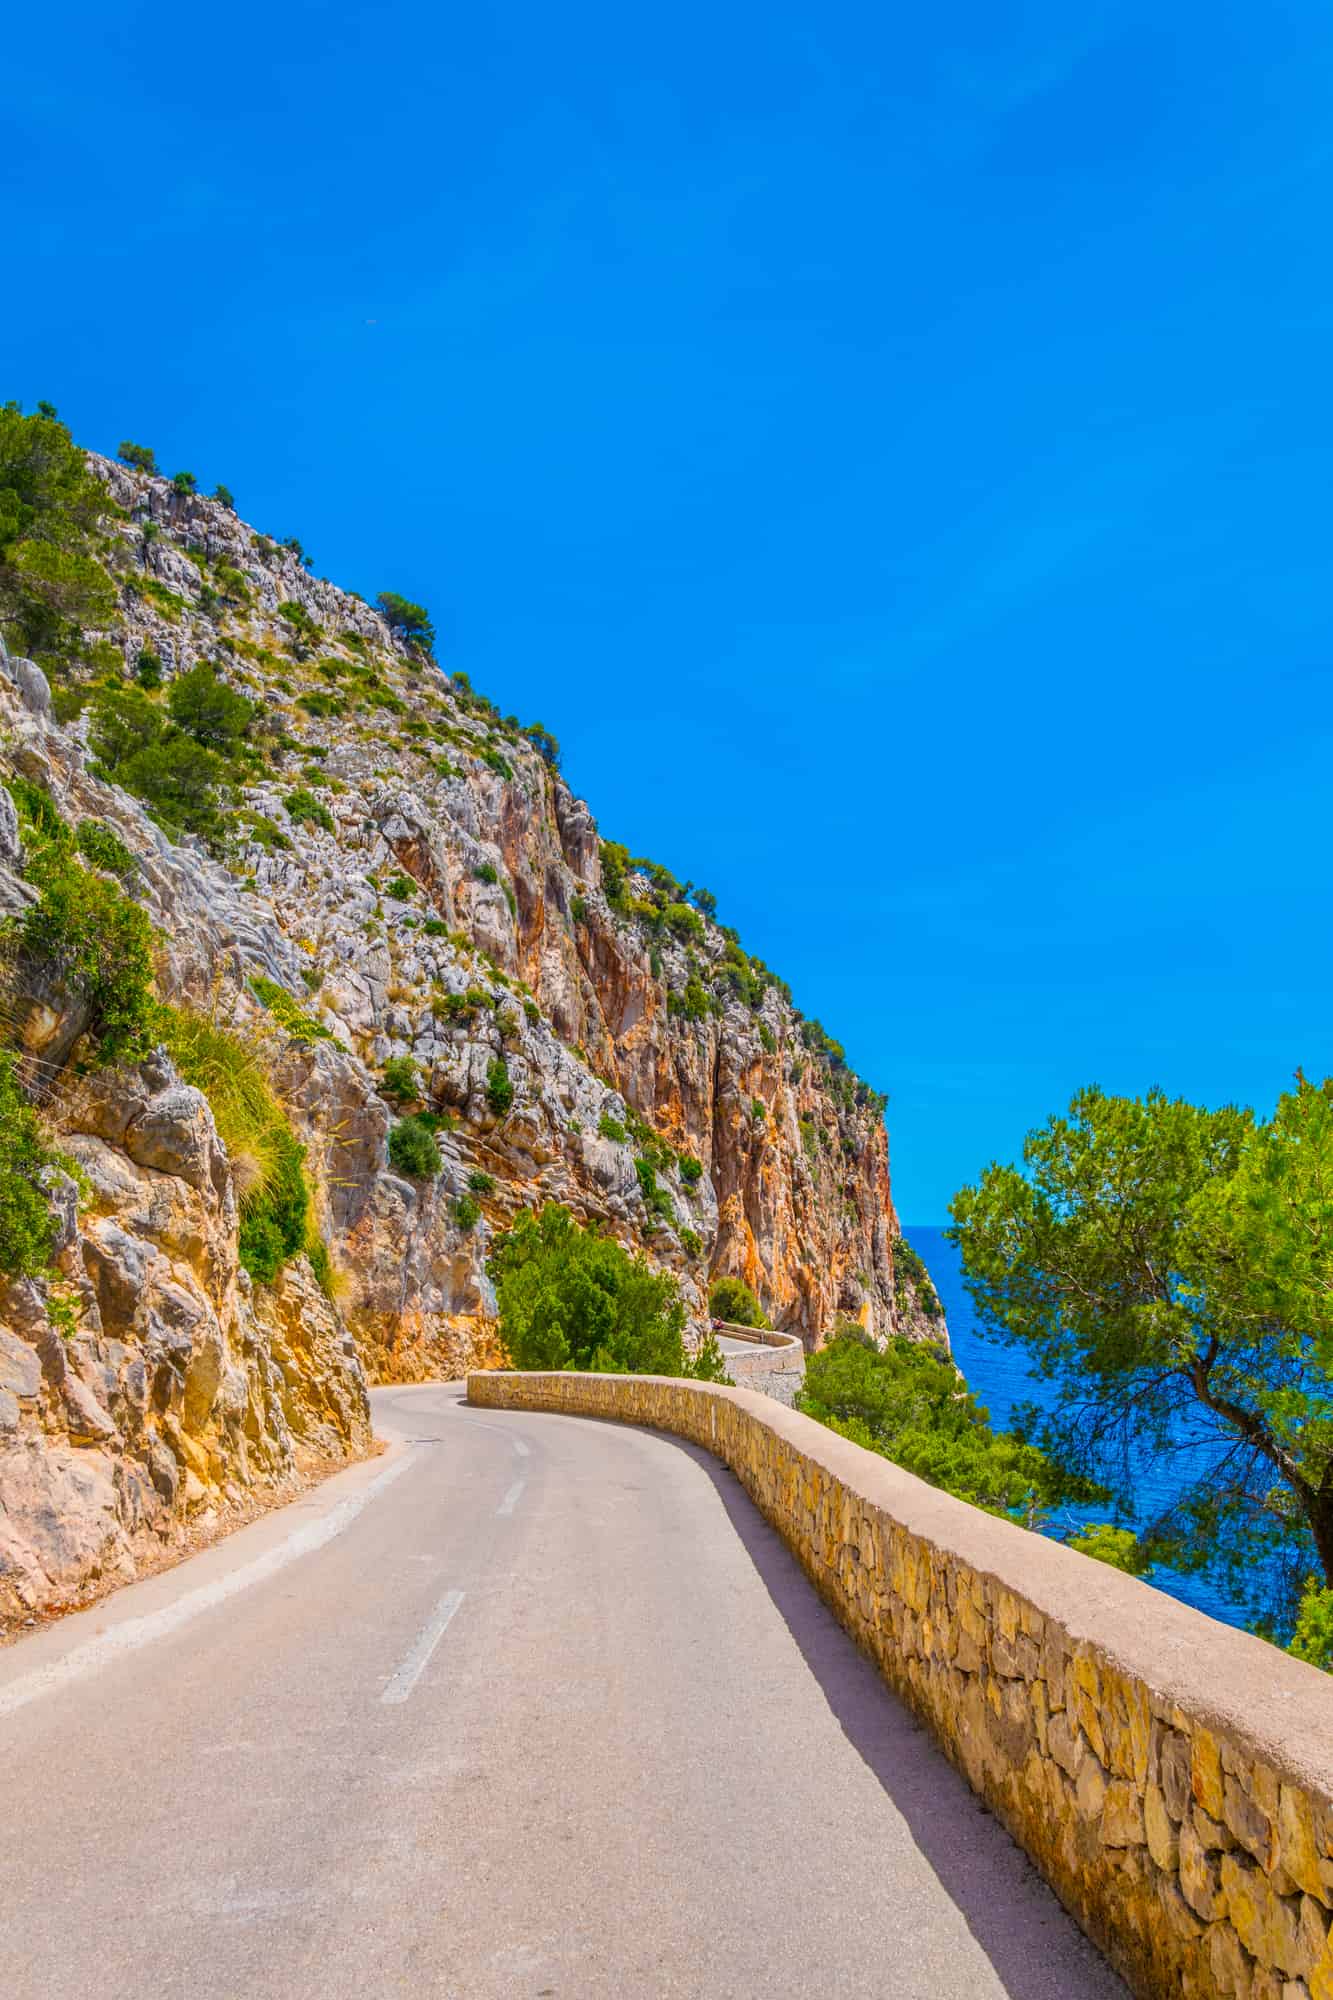 A coastal road winding through Spain